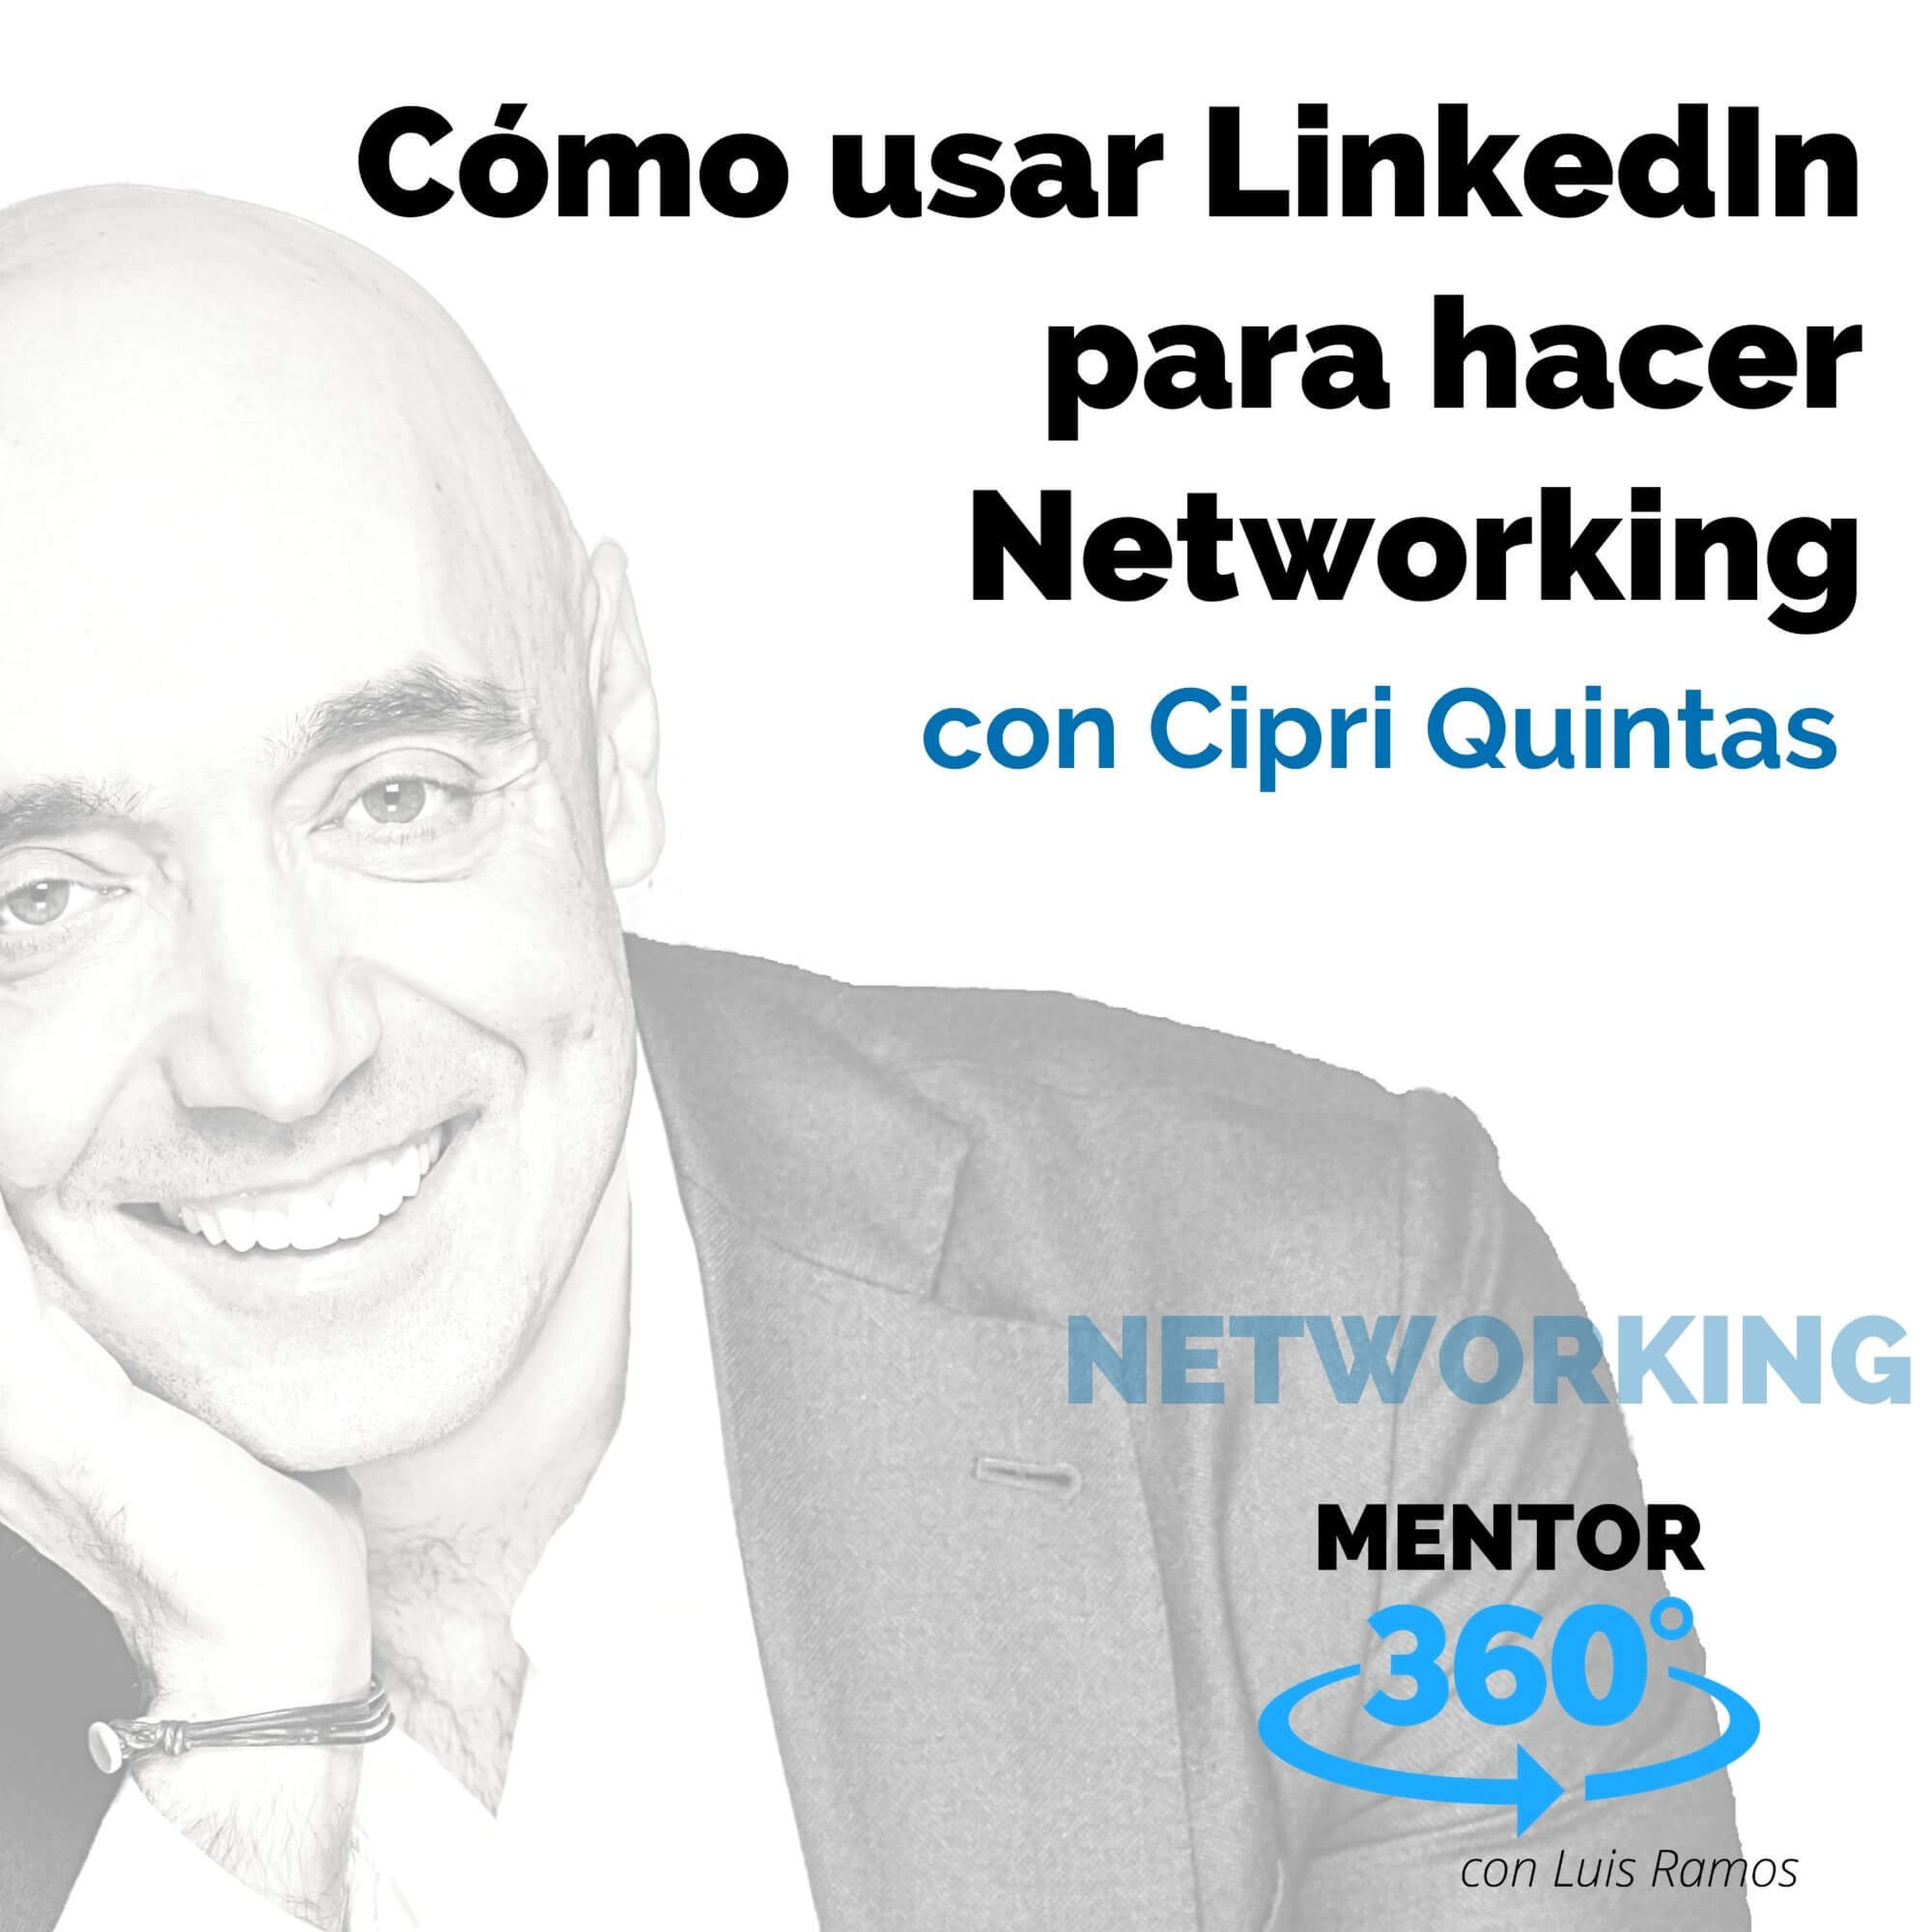 Cómo usar LinkedIn para hacer Networking, con Cipri Quintas - NETWORKING - MENTOR360